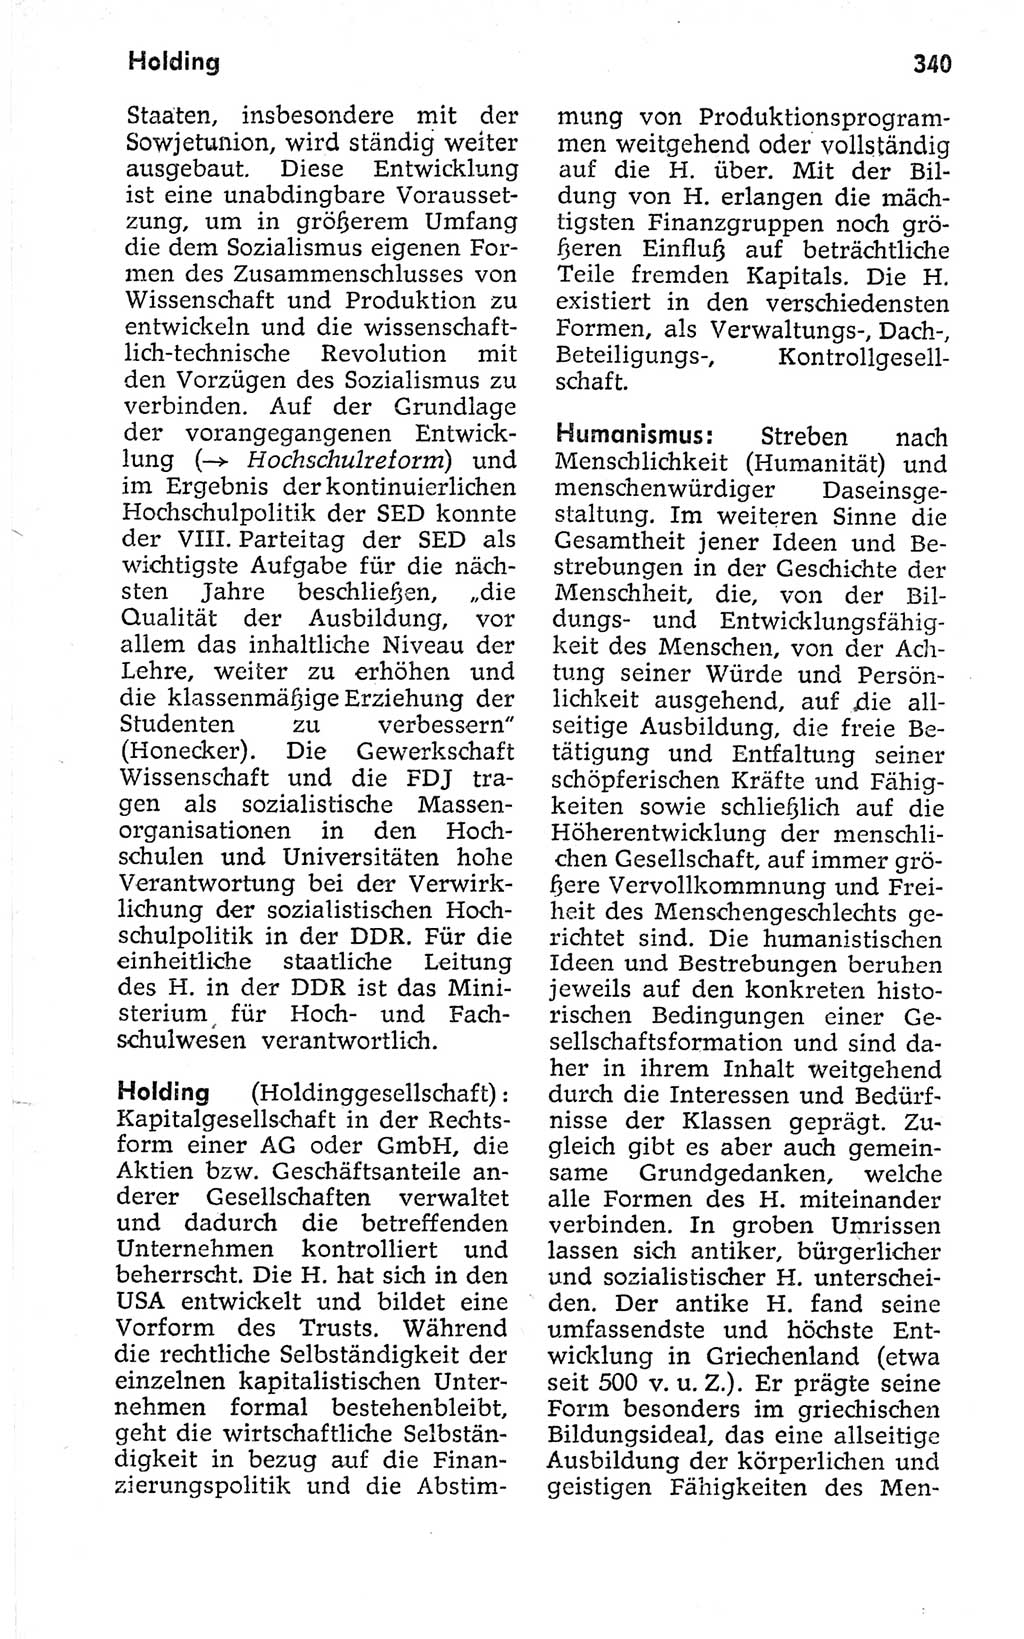 Kleines politisches Wörterbuch [Deutsche Demokratische Republik (DDR)] 1973, Seite 340 (Kl. pol. Wb. DDR 1973, S. 340)